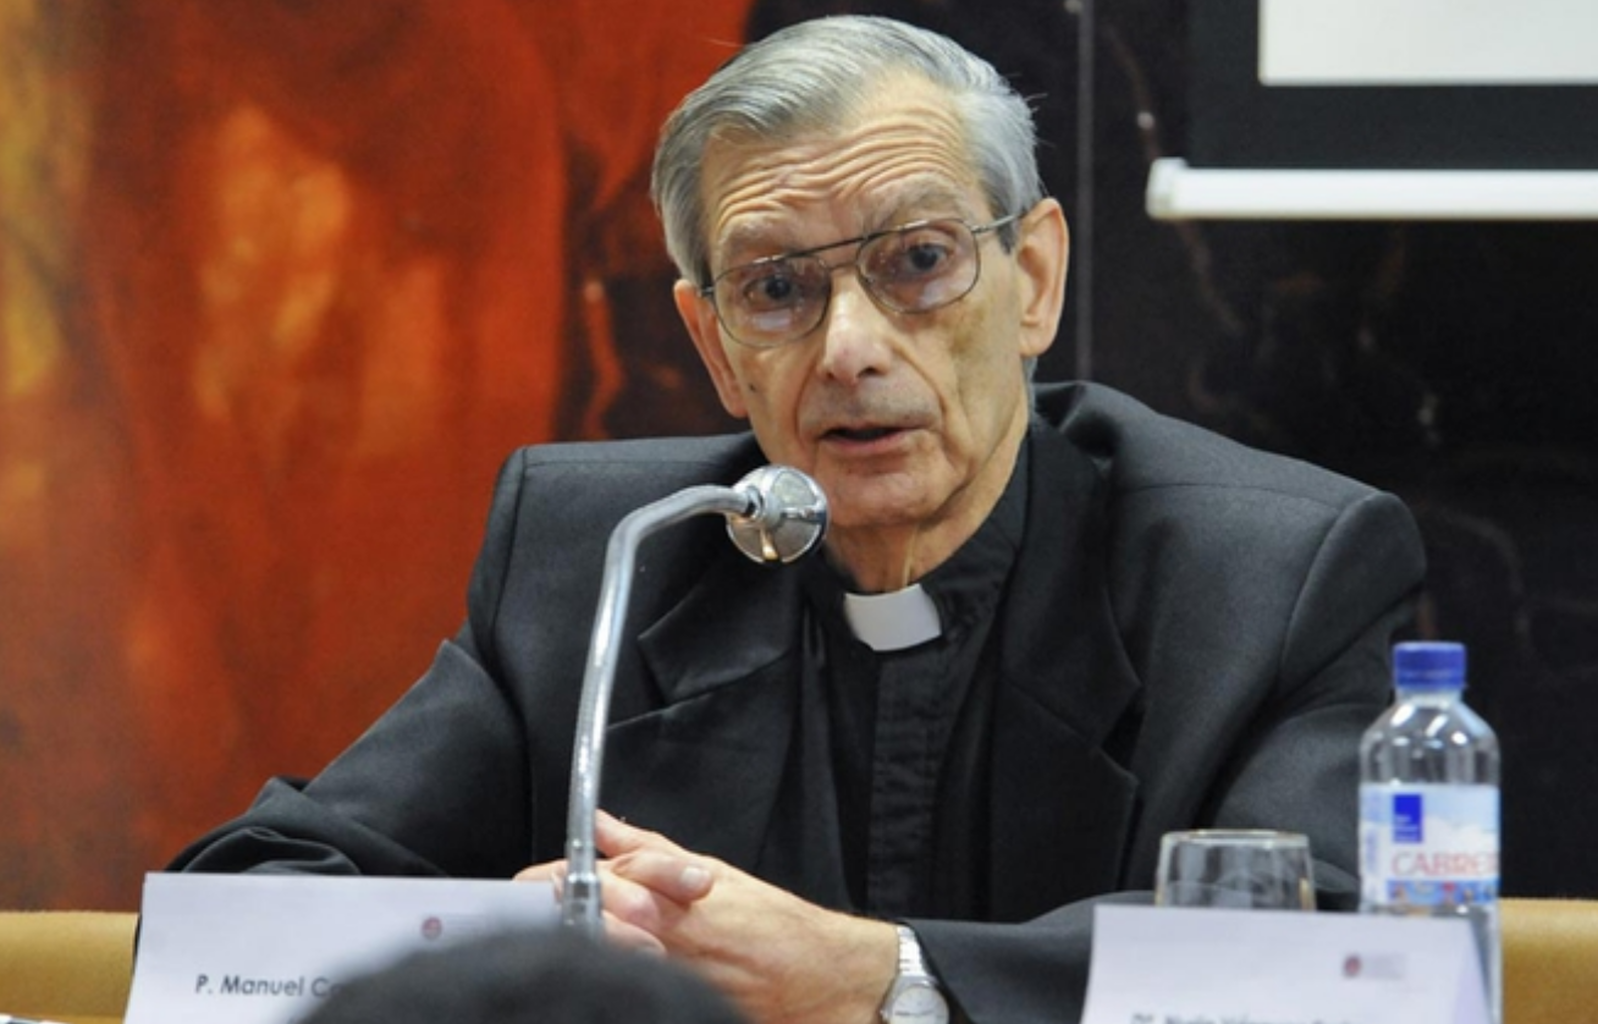 Fallece el P. Manuel Carreira, reconocido jesuita y astrofísico español -  Noticias Jesuitas